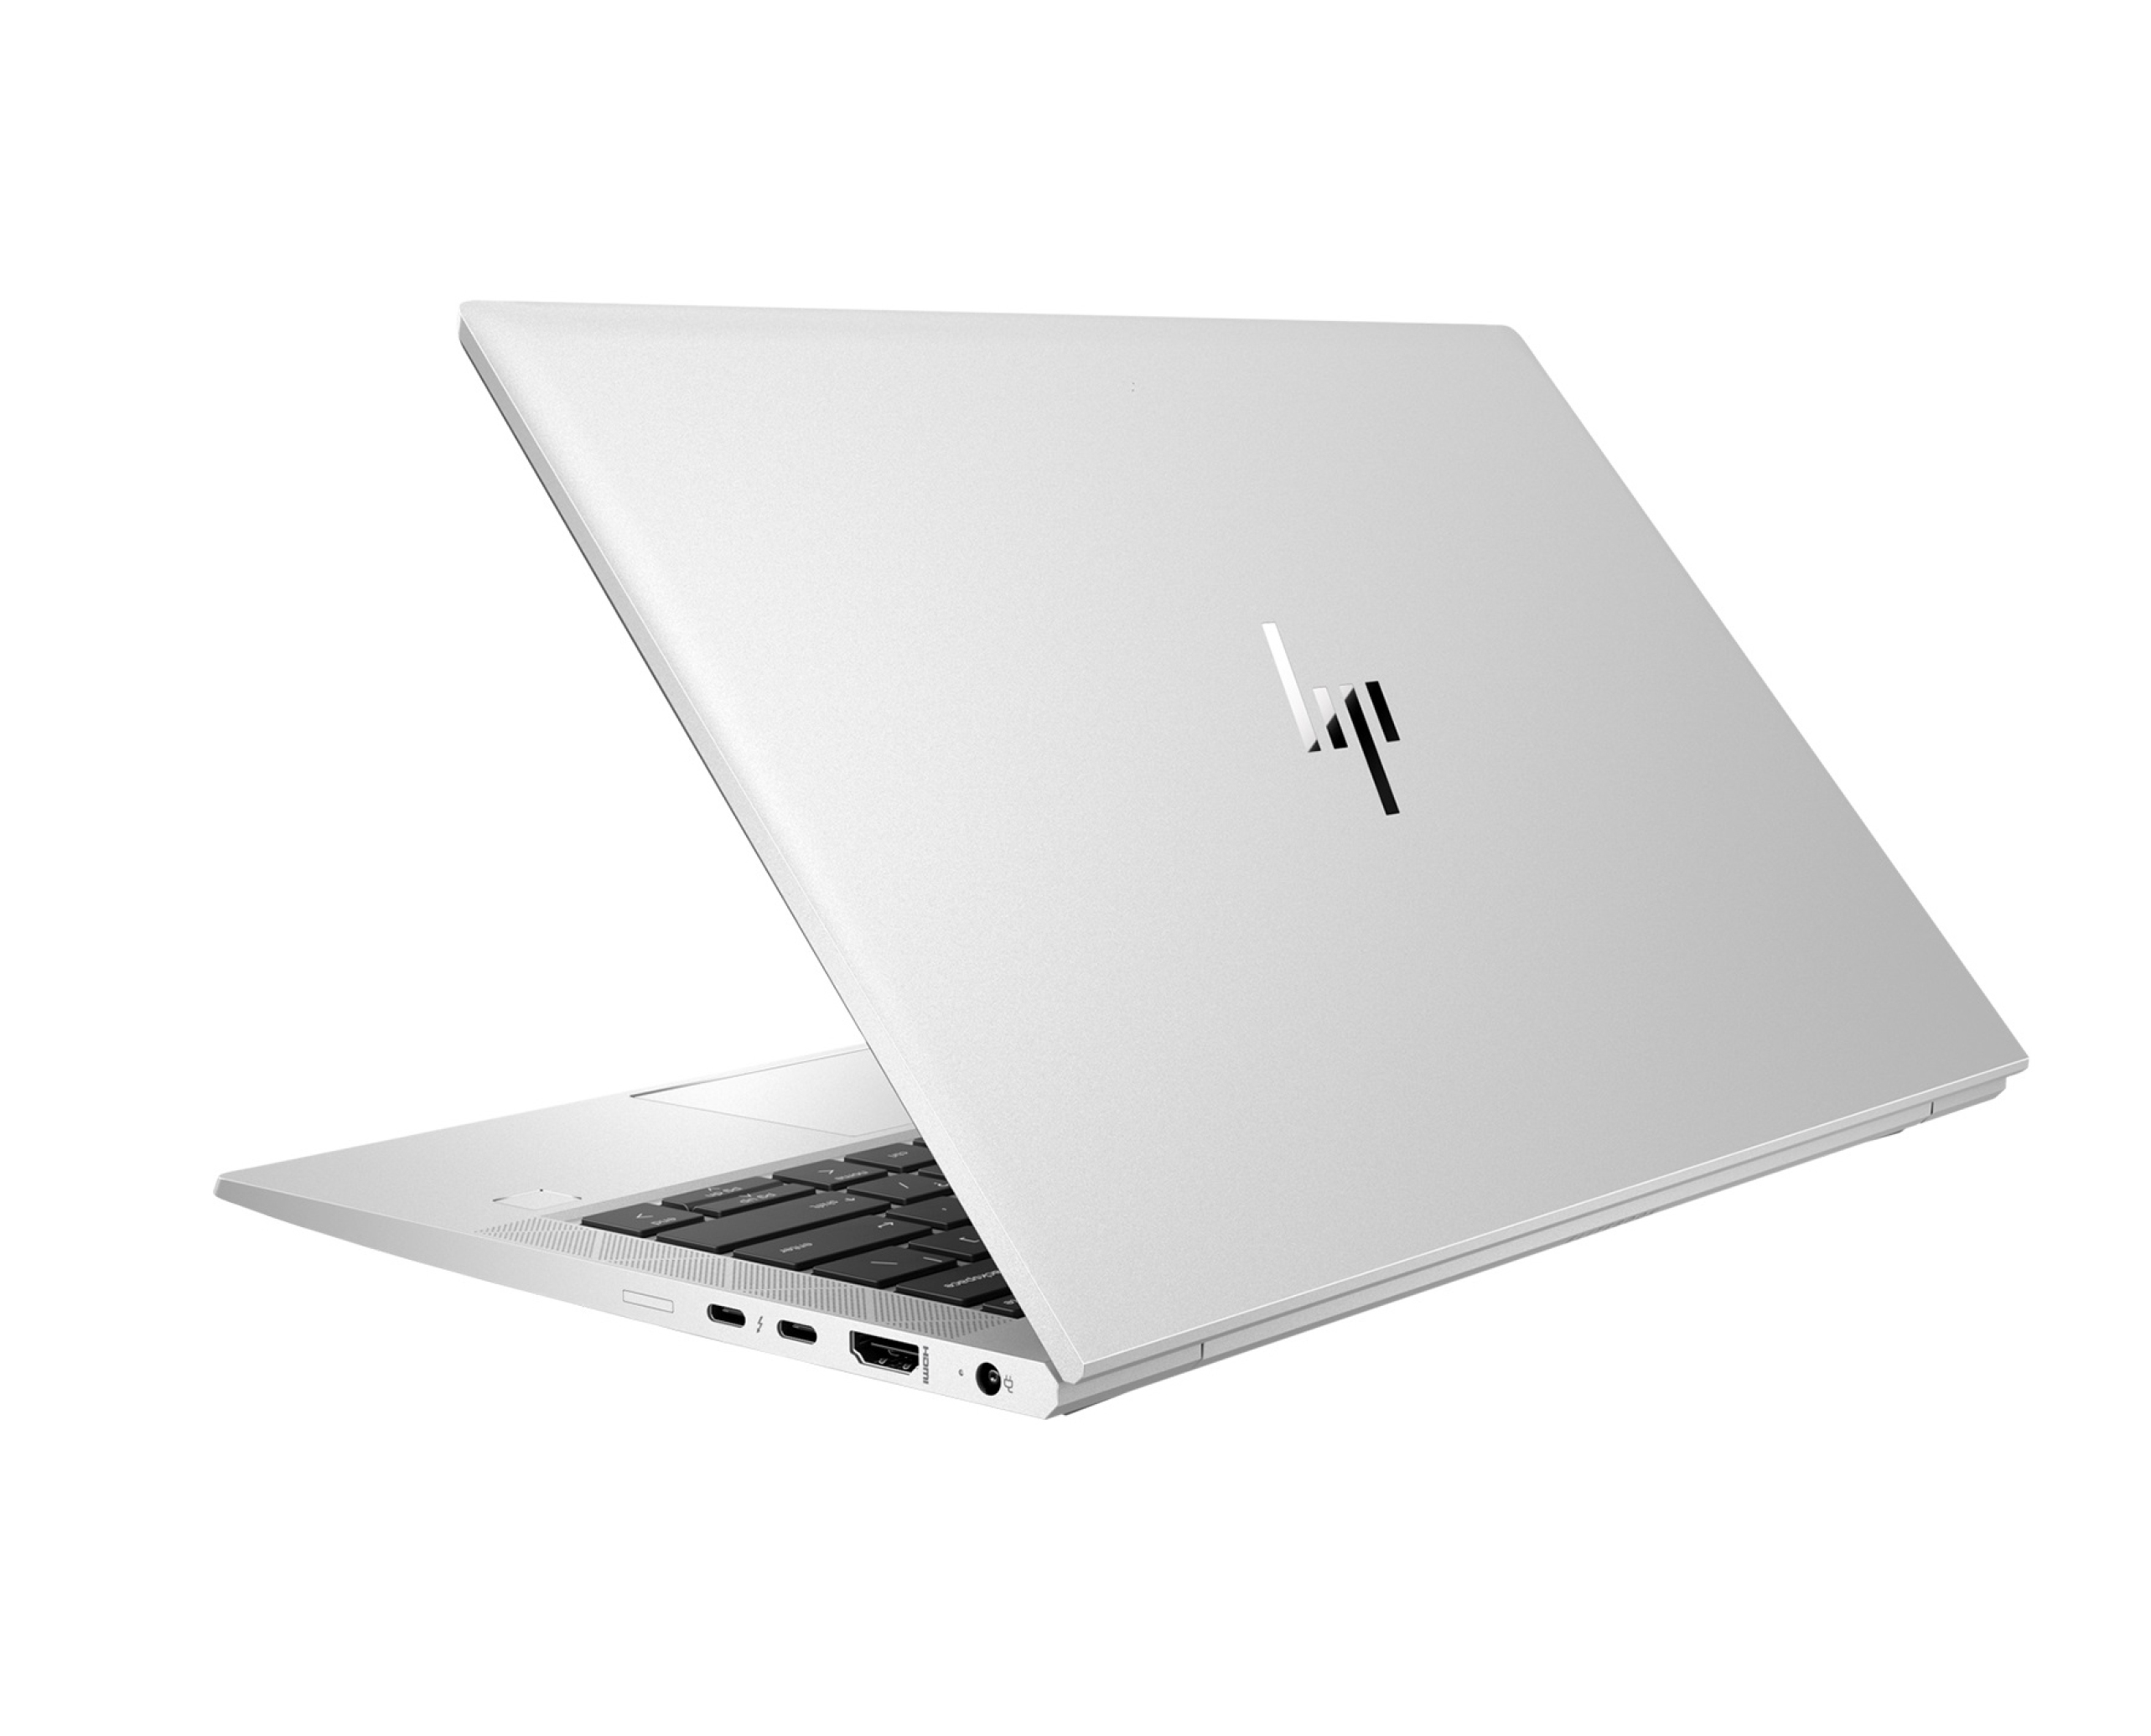  لپ تاپ HP EliteBook 830 G7 قیمت | لاکچری لپ تاپ 